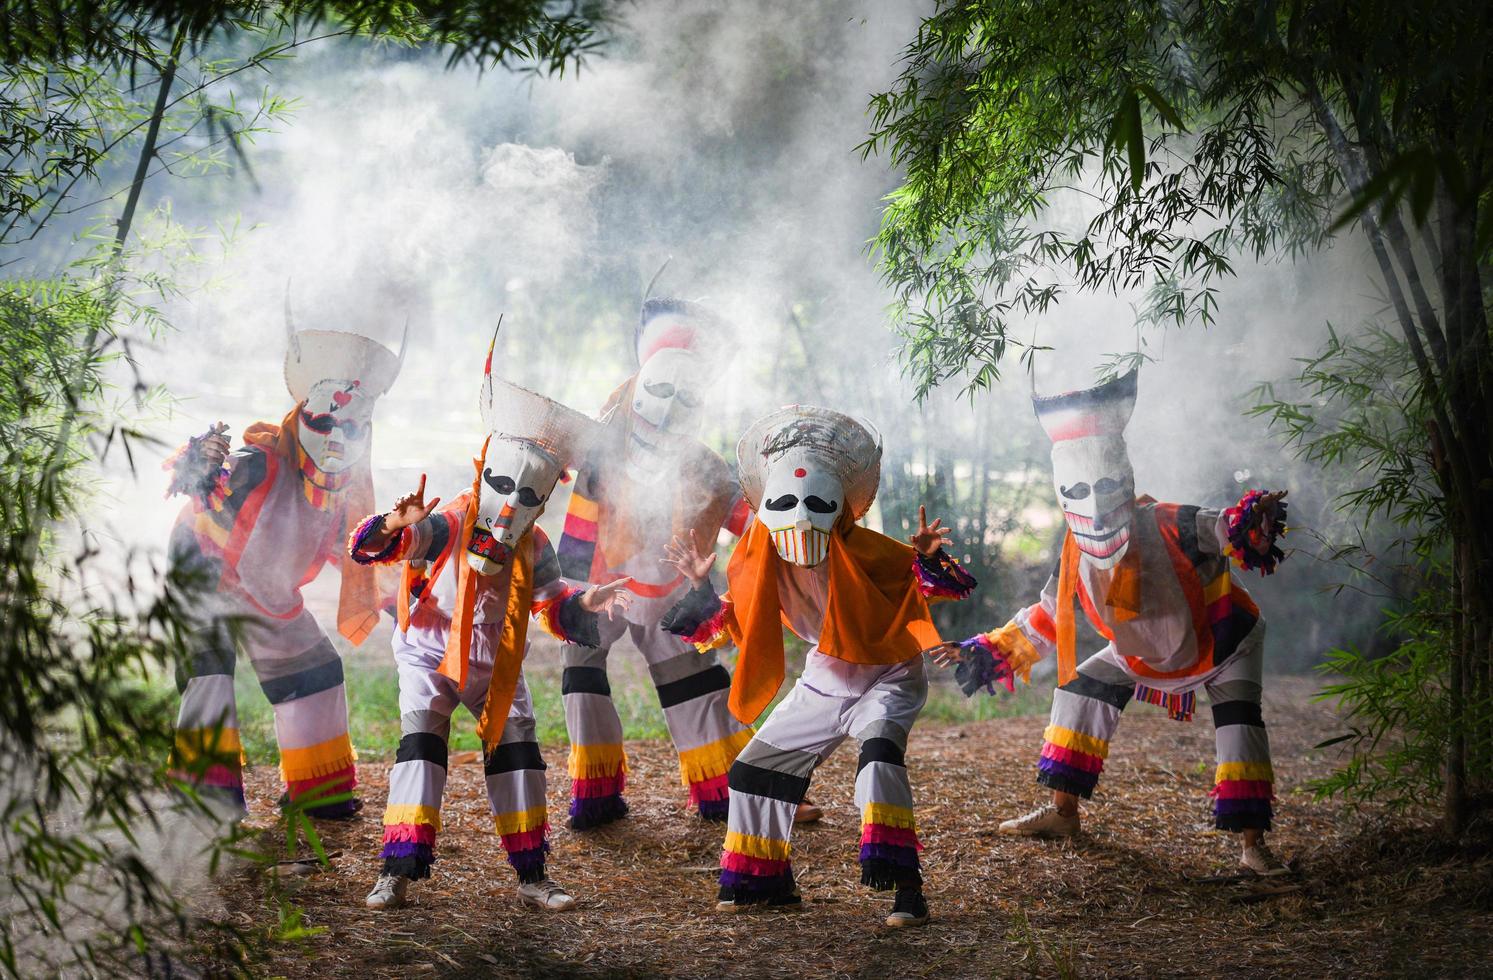 phi ta khon festival maschera fantasma e costume colorato divertimento tradizionale thailandia maschera lo spettacolo arte e cultura provincia di loei dan sai thailand festival - phi ta khon o halloween della thailandia foto